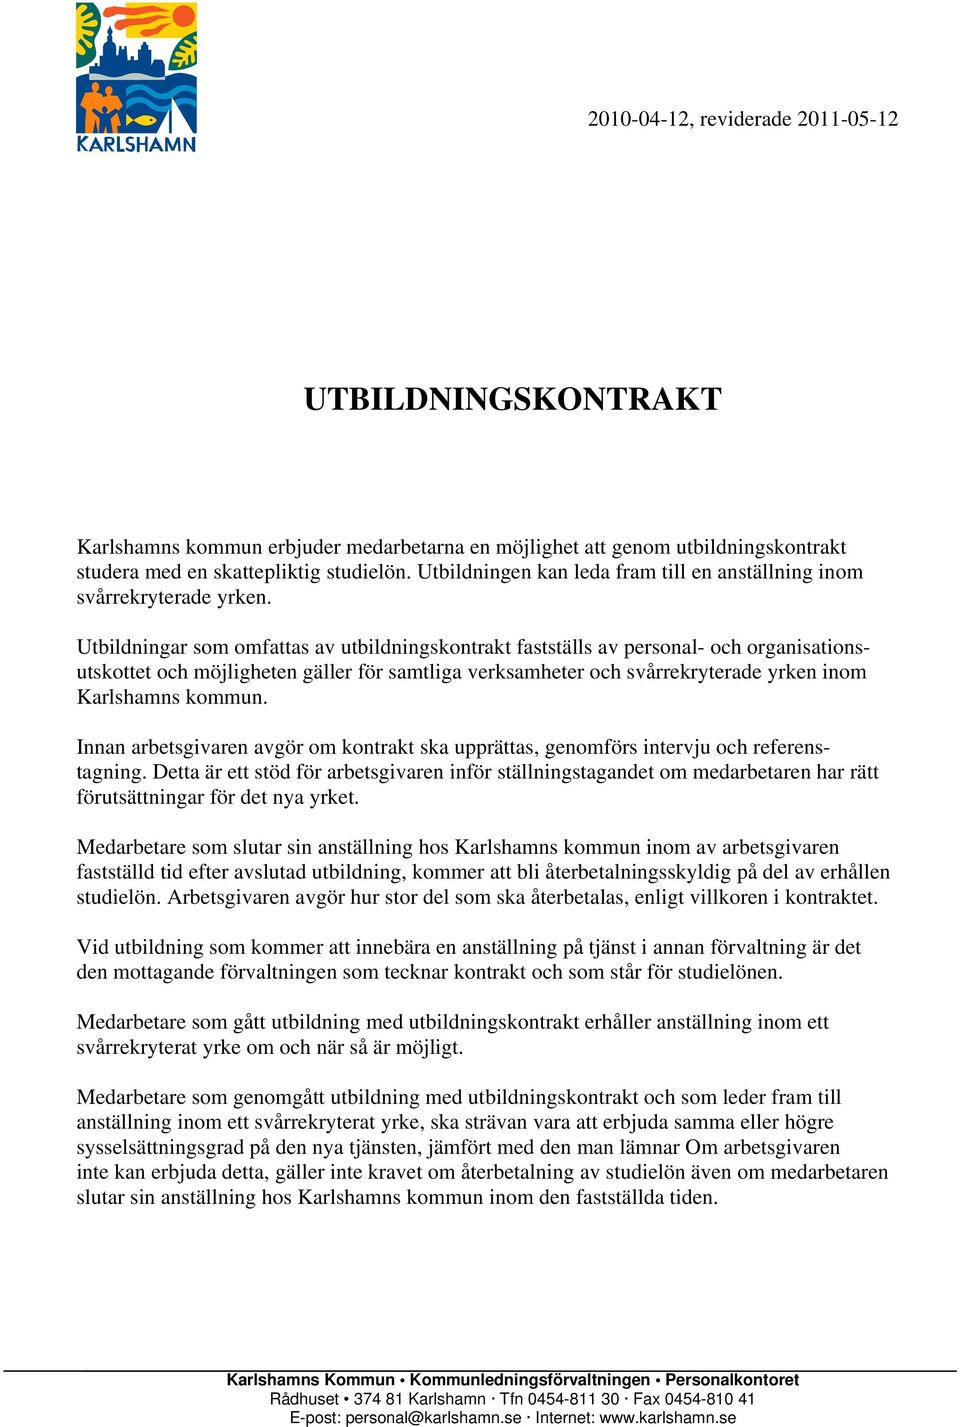 Utbildningar som omfattas av utbildningskontrakt fastställs av personal- och organisationsutskottet och möjligheten gäller för samtliga verksamheter och svårrekryterade yrken inom Karlshamns kommun.